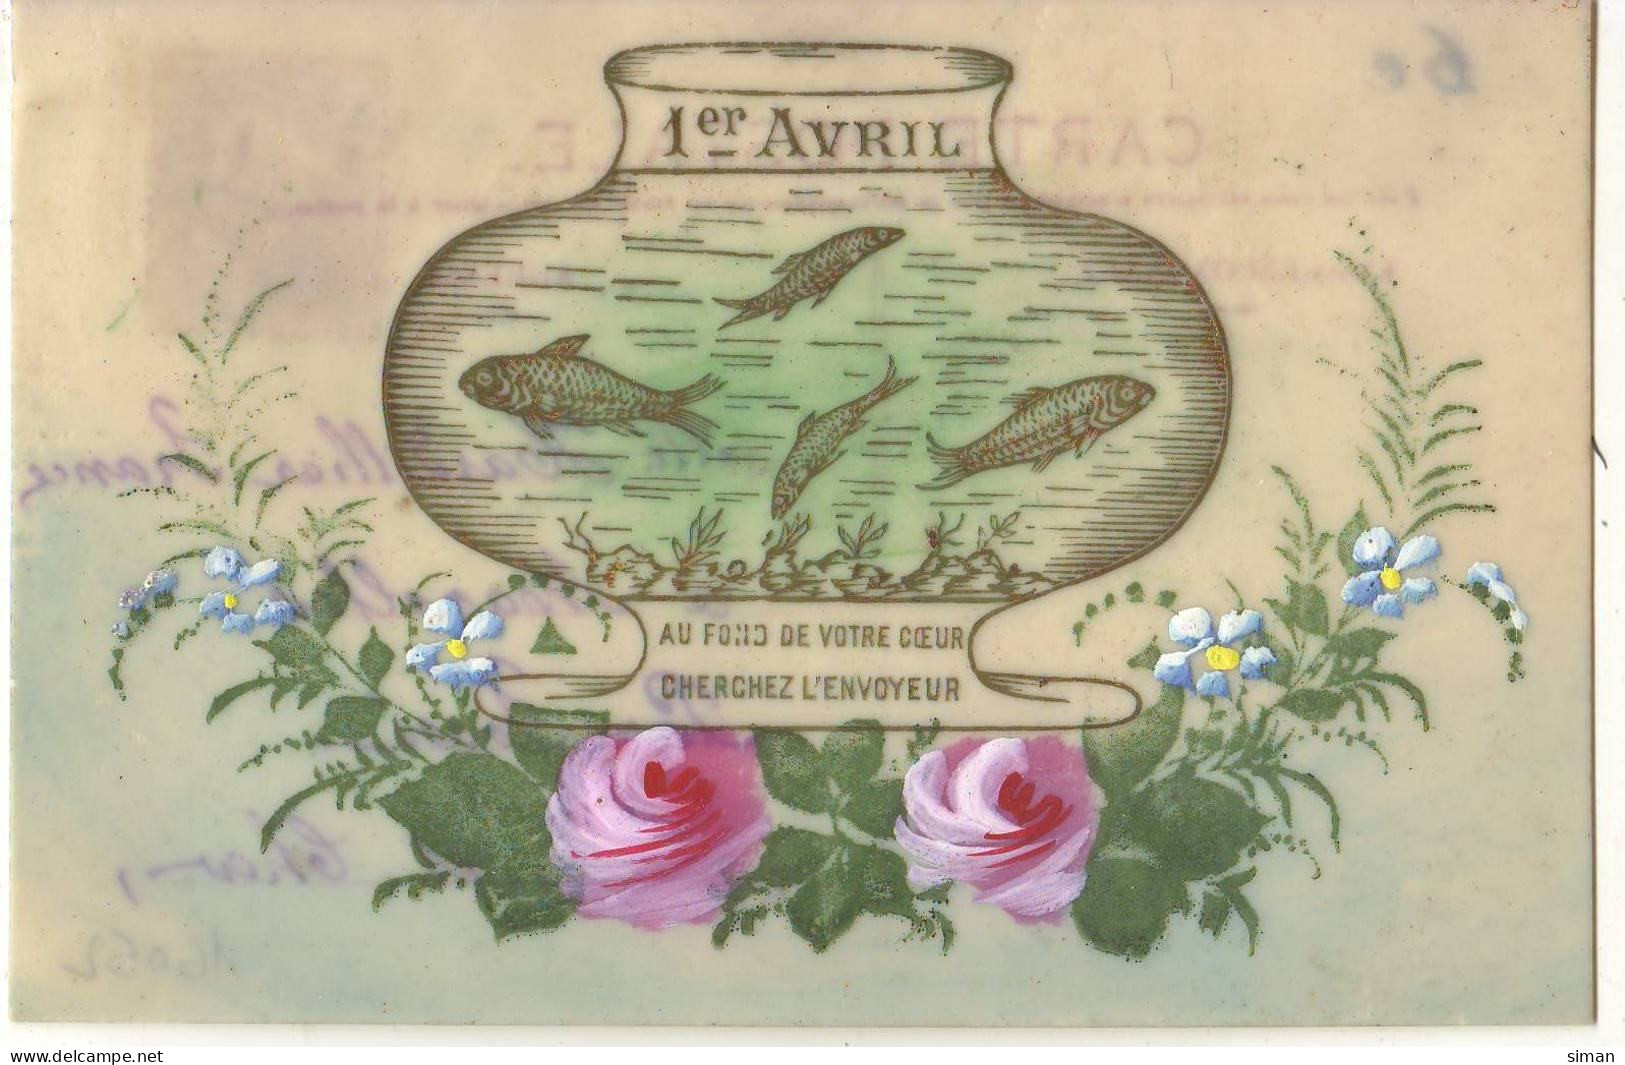 N°16052 - Carte Celluloïd - 1er Avril - Au Fond De Votre Coeur Cherchez L'envoyeur - Poissons Dans Un Bocal - April Fool's Day